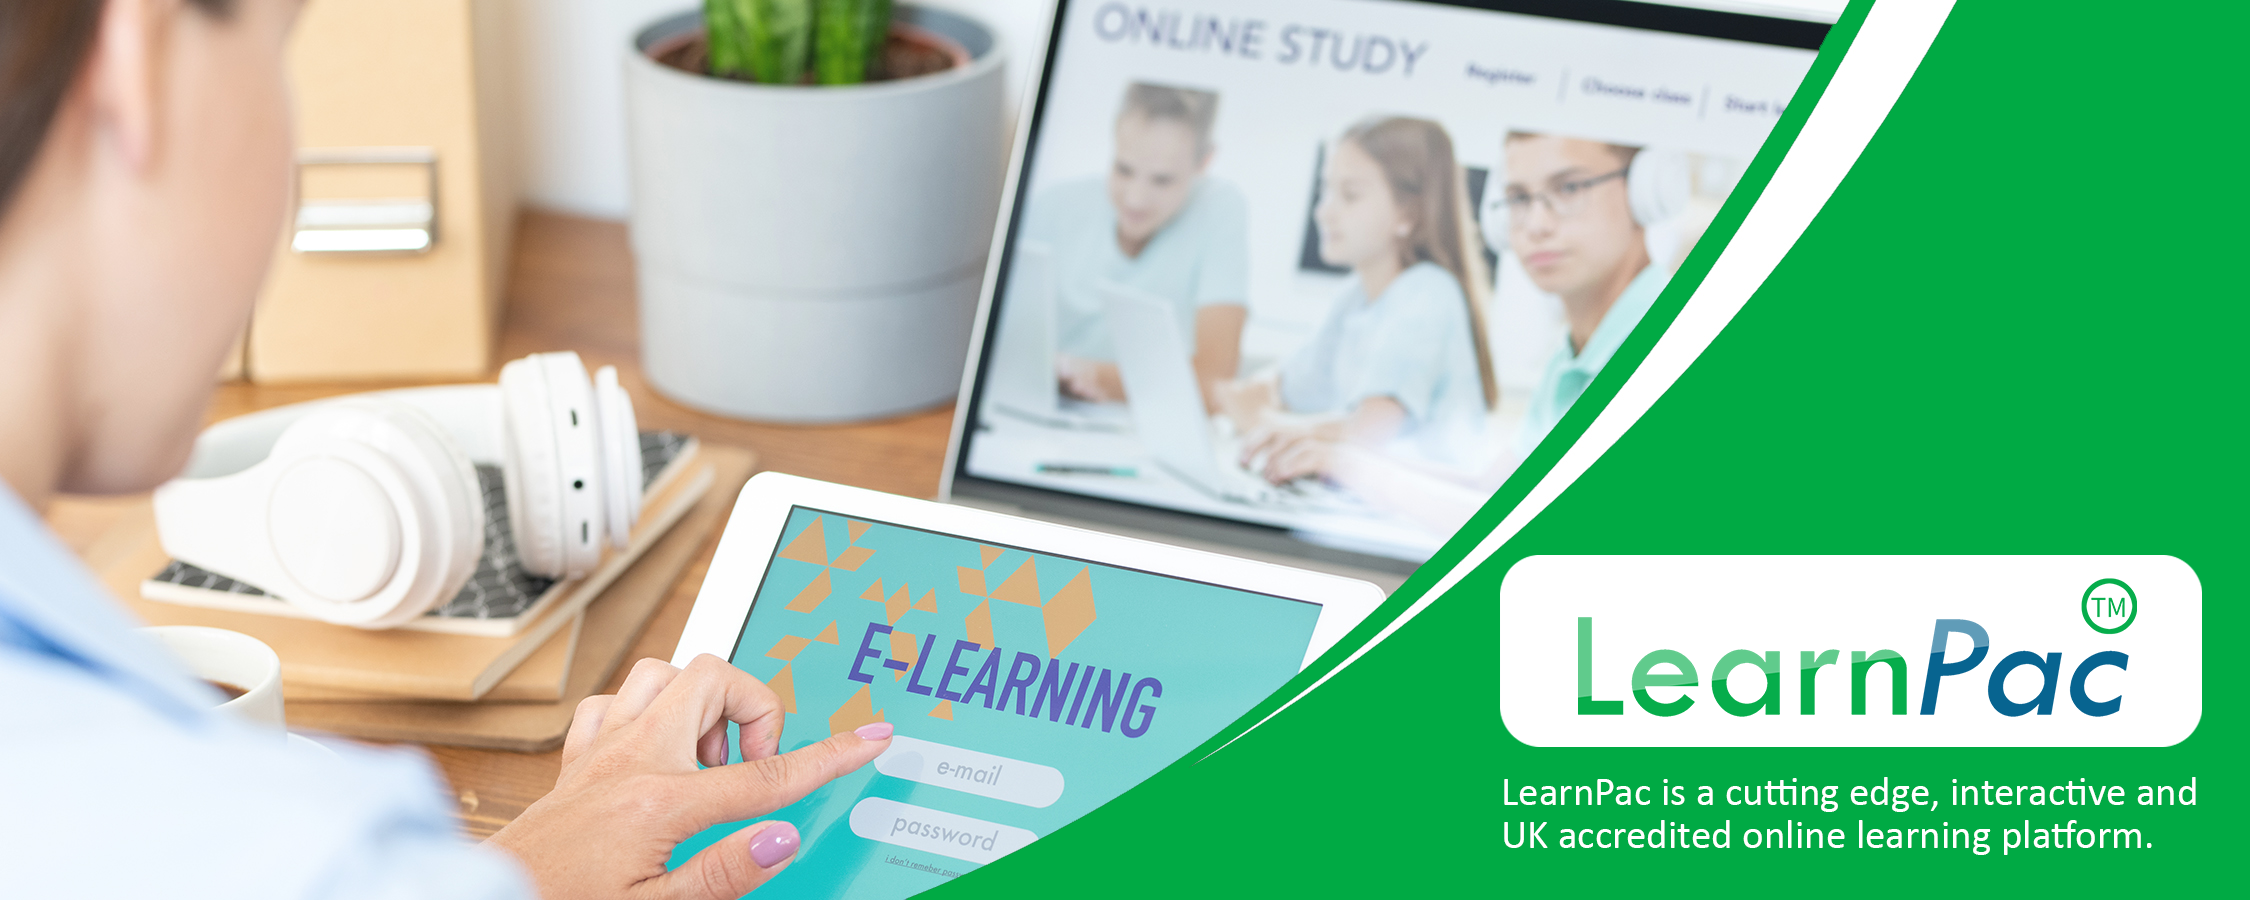 Understanding the EYFS Framework - Online Learning Courses - E-Learning Courses - LearnPac Systems UK -